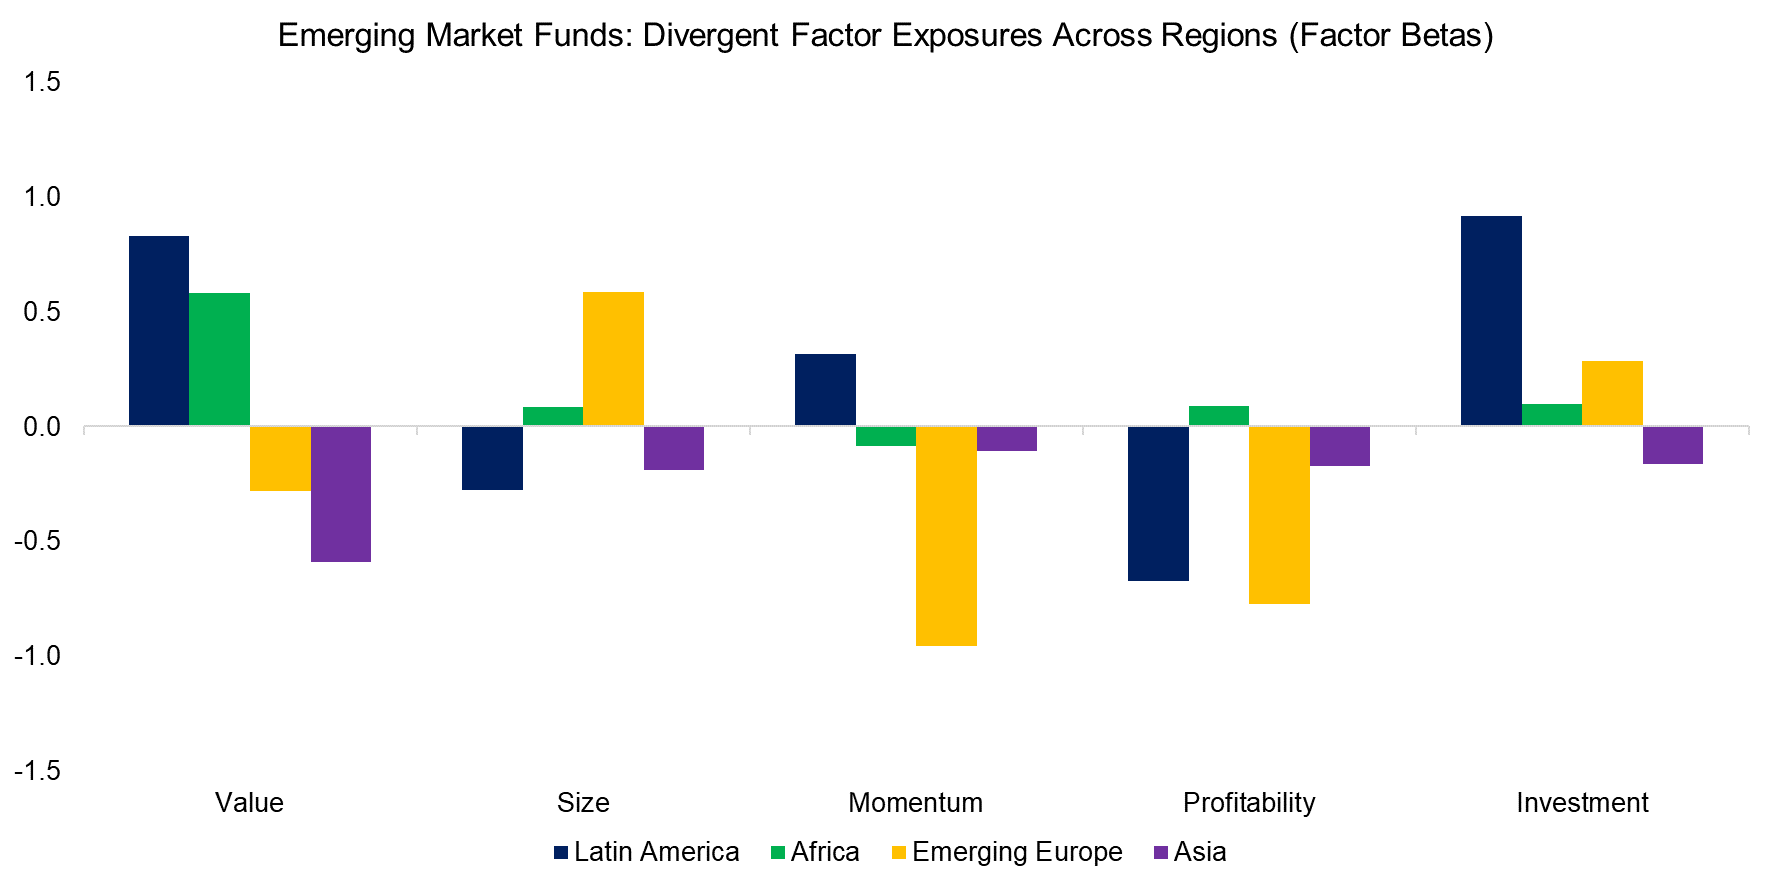 Emerging Market Funds Divergent Factor Exposures Across Regions (Factor Betas)